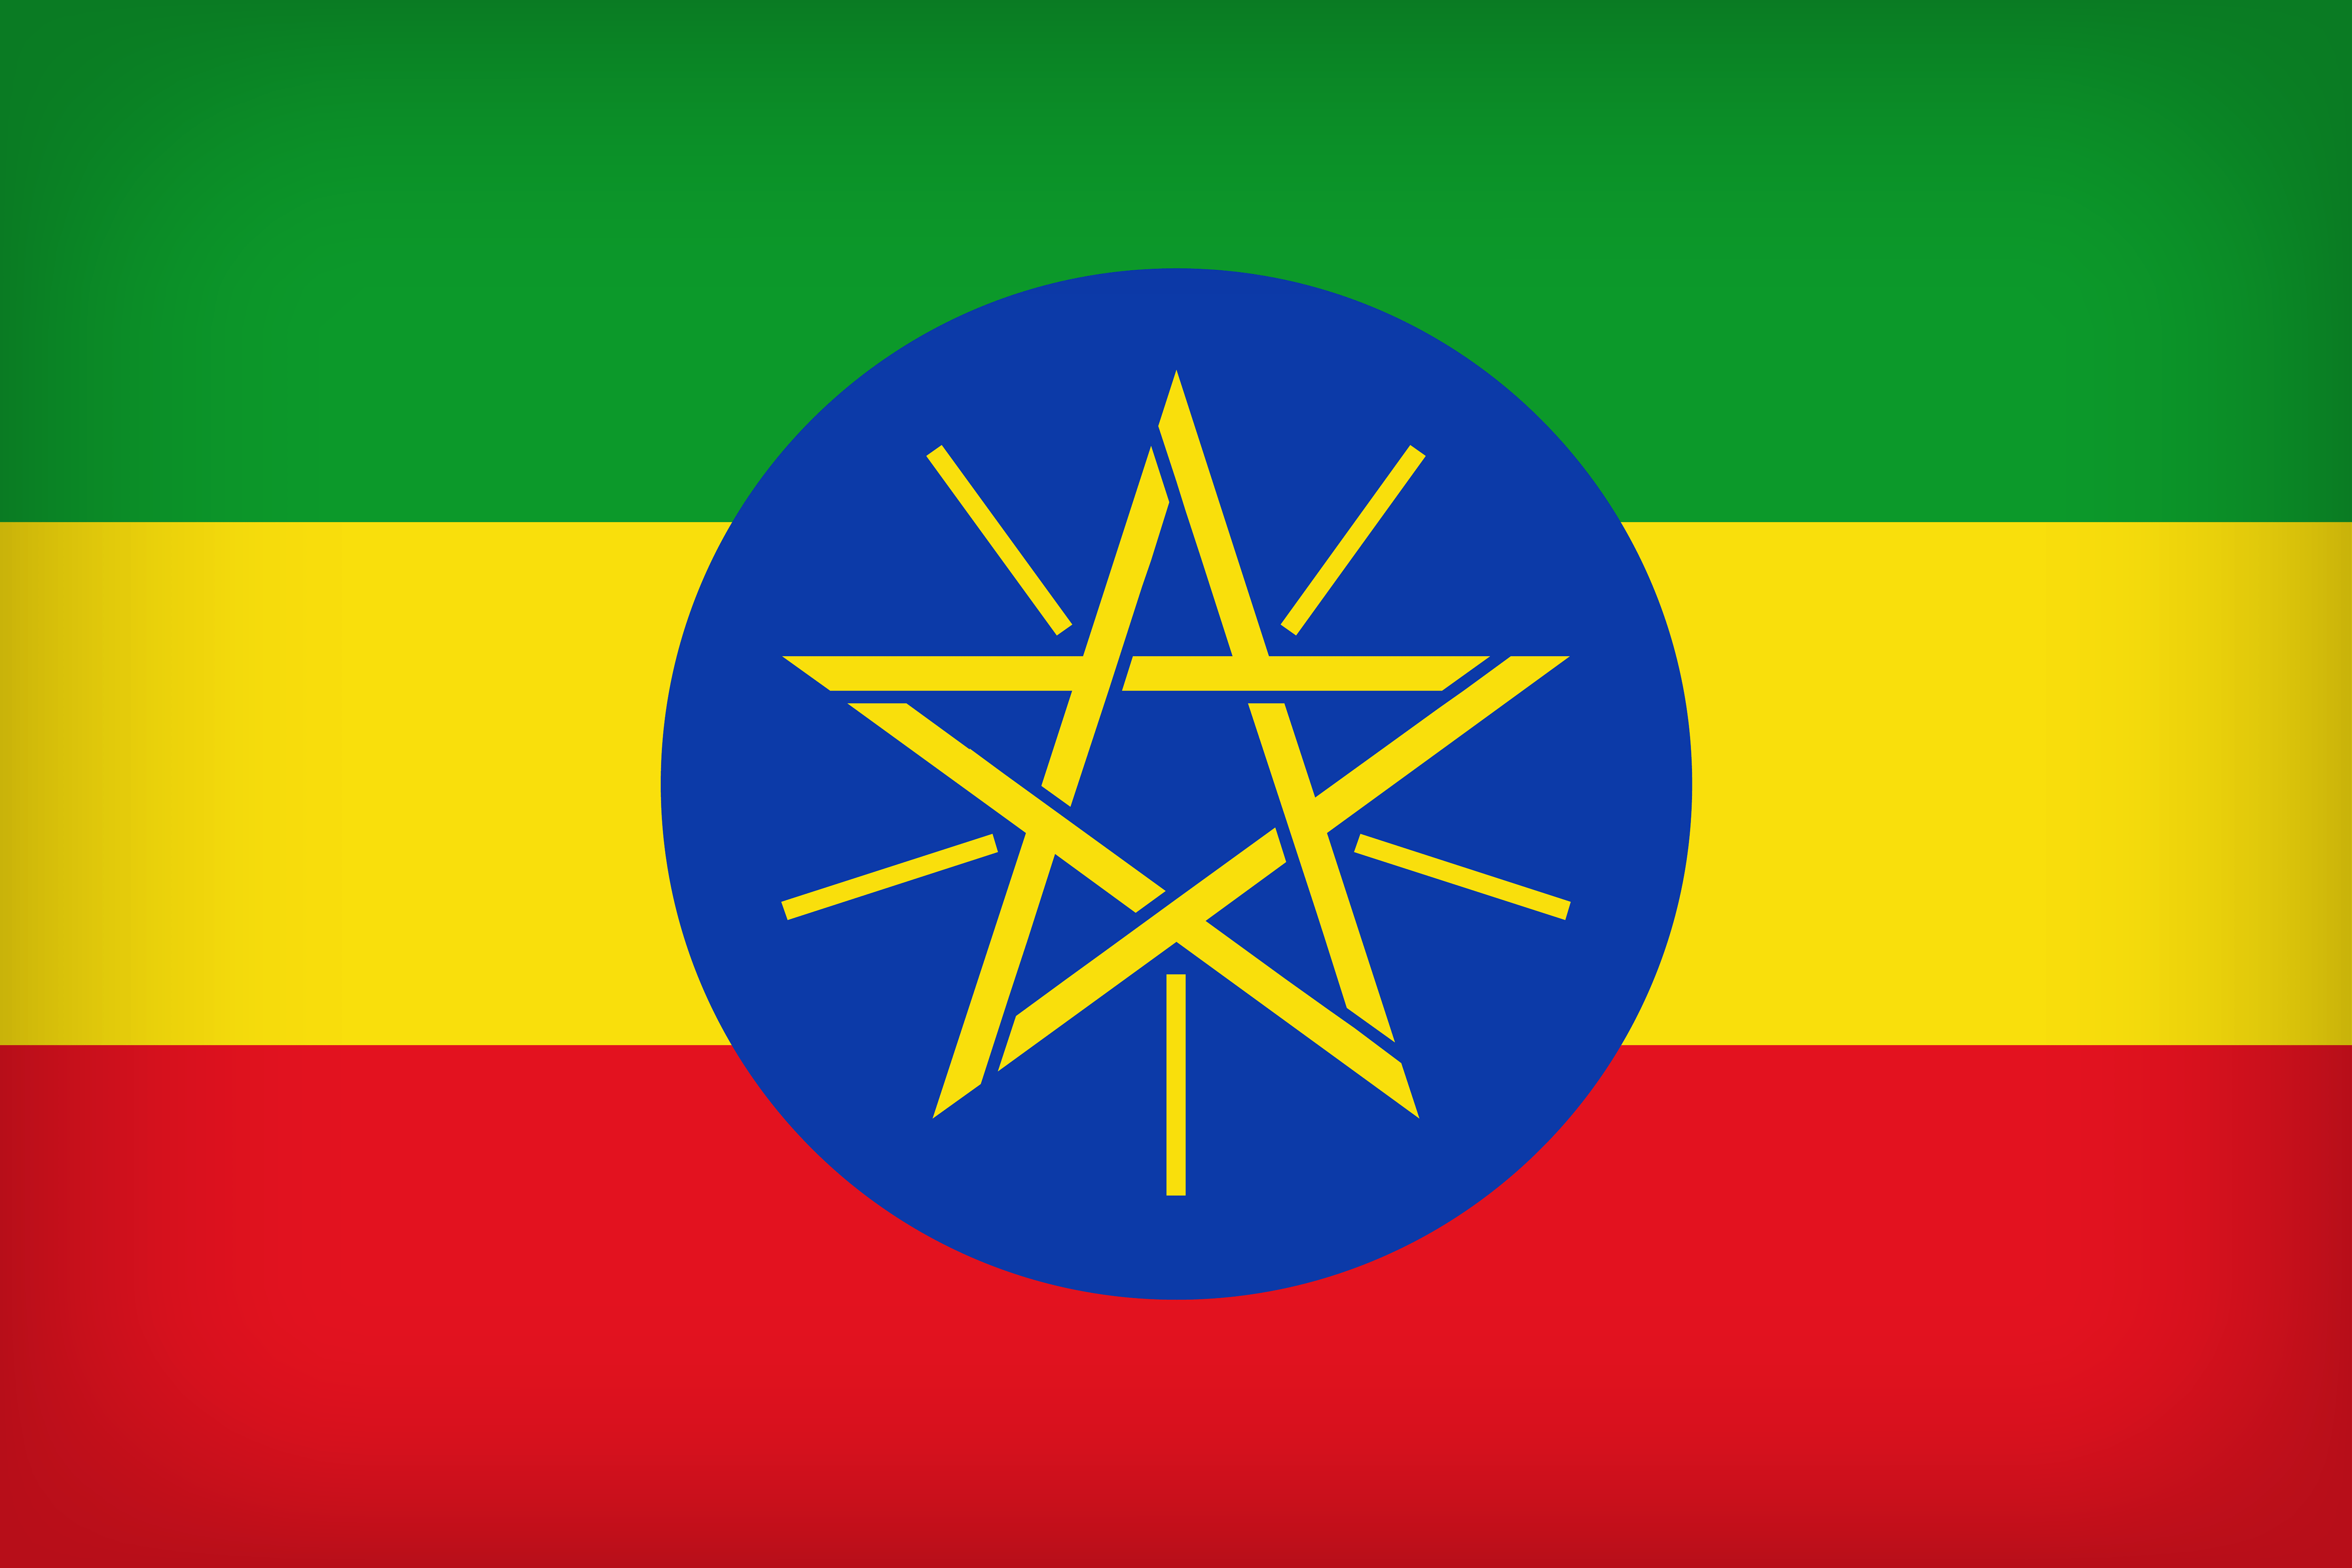 Ethiopia Large Flag Quality Image